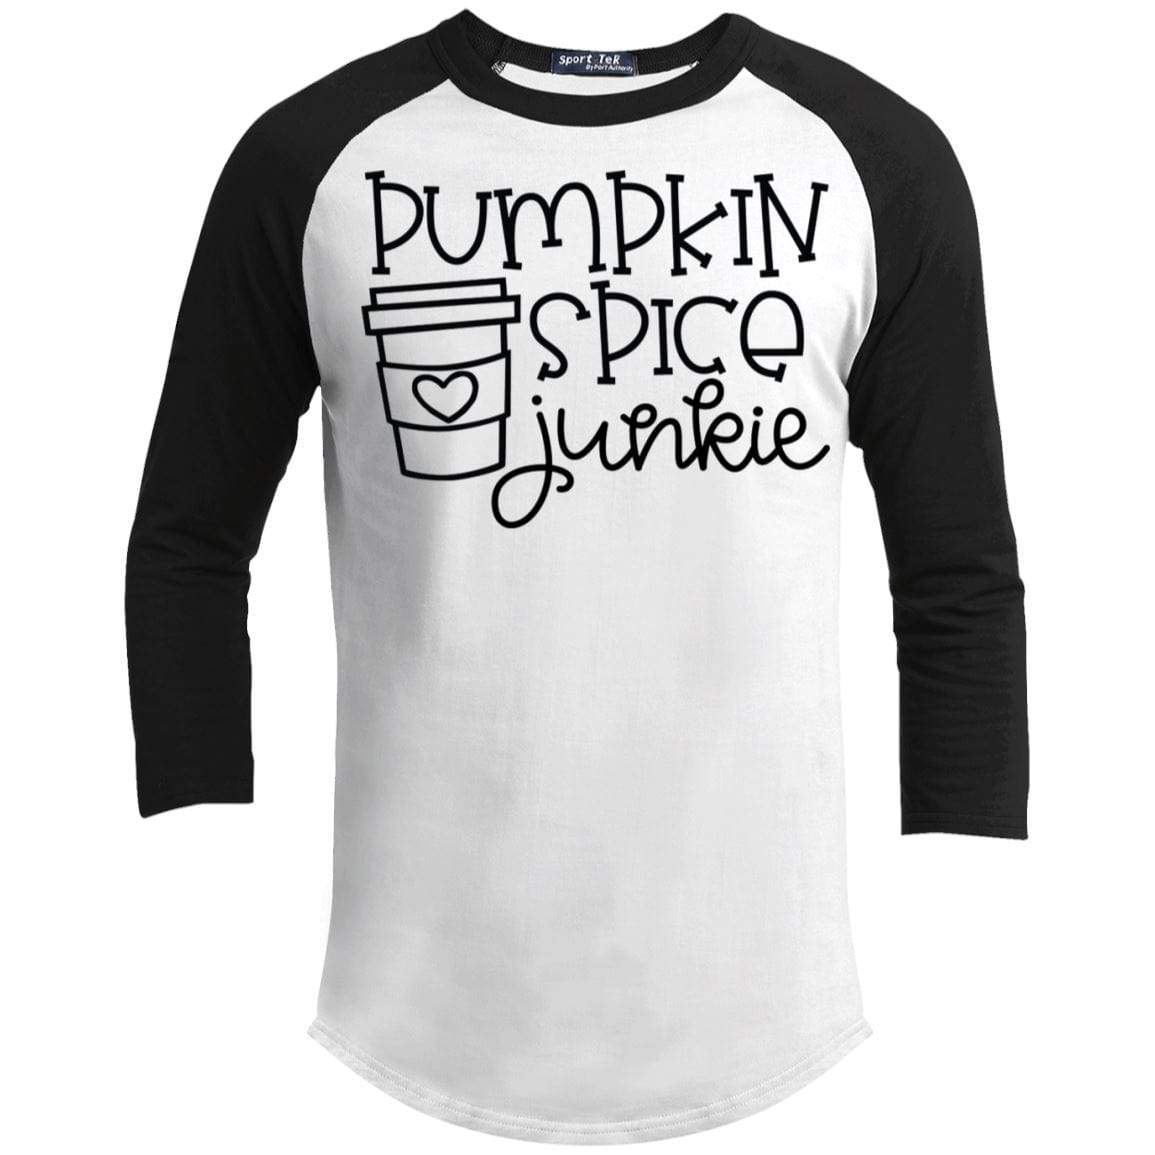 Pumpkin Spice Junkie Raglan T-Shirts CustomCat White/Black X-Small 